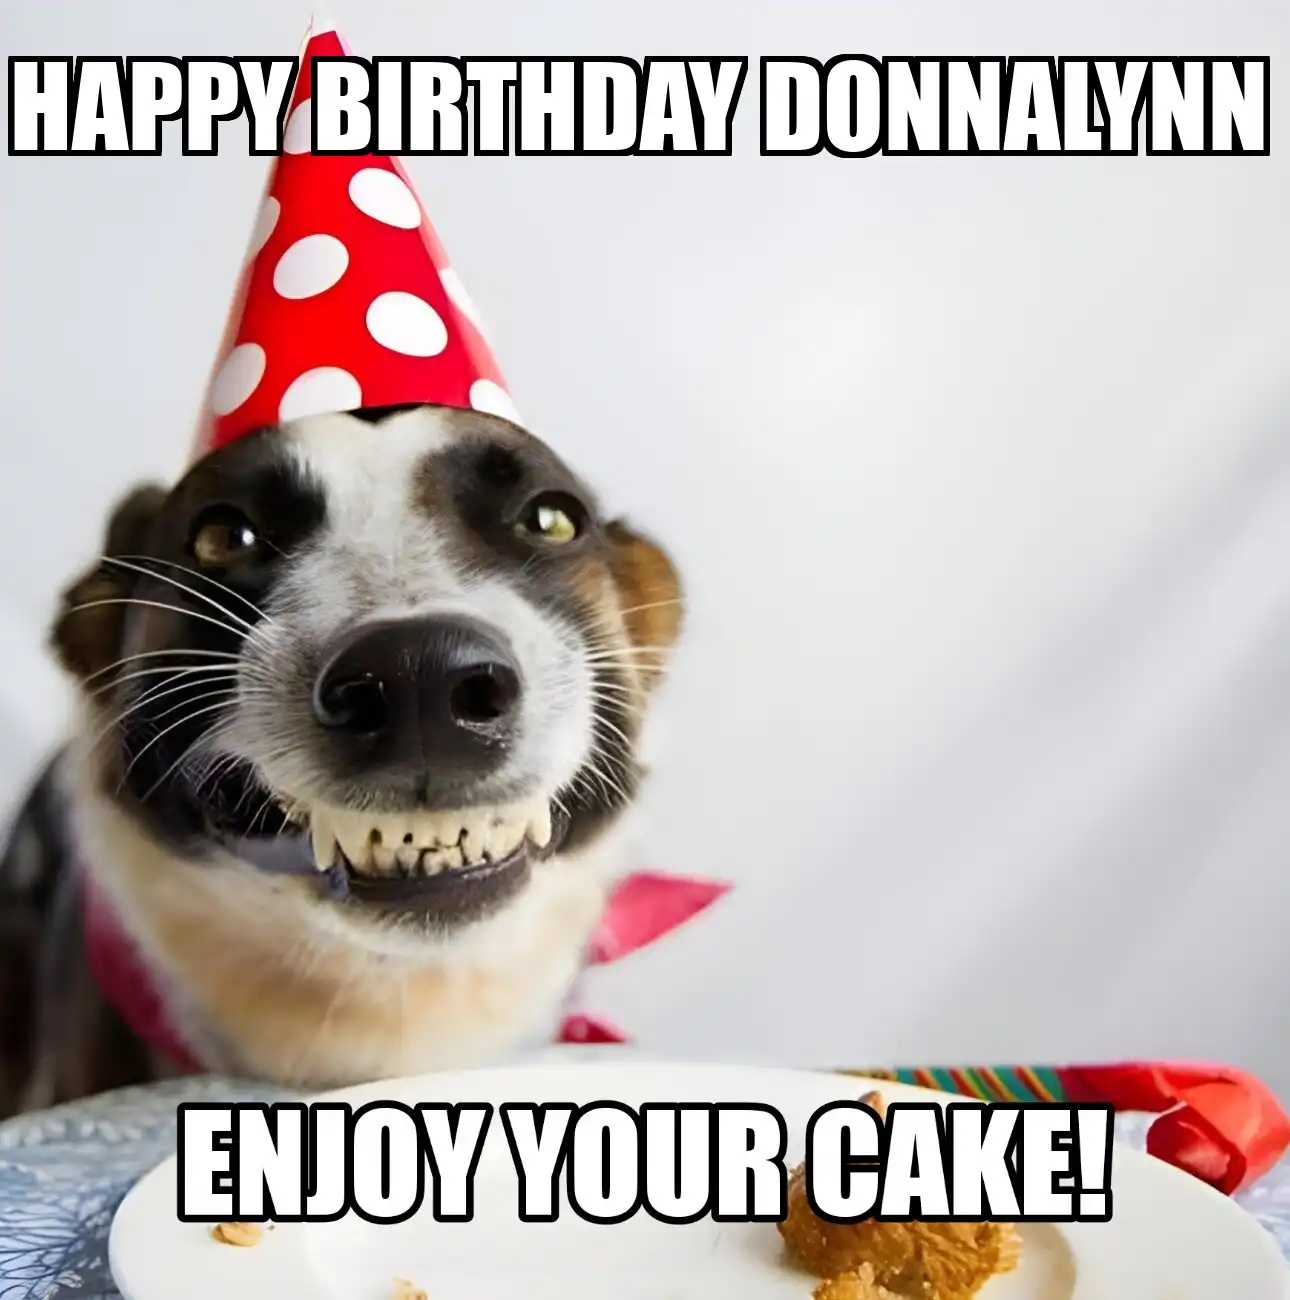 Happy Birthday Donnalynn Enjoy Your Cake Dog Meme